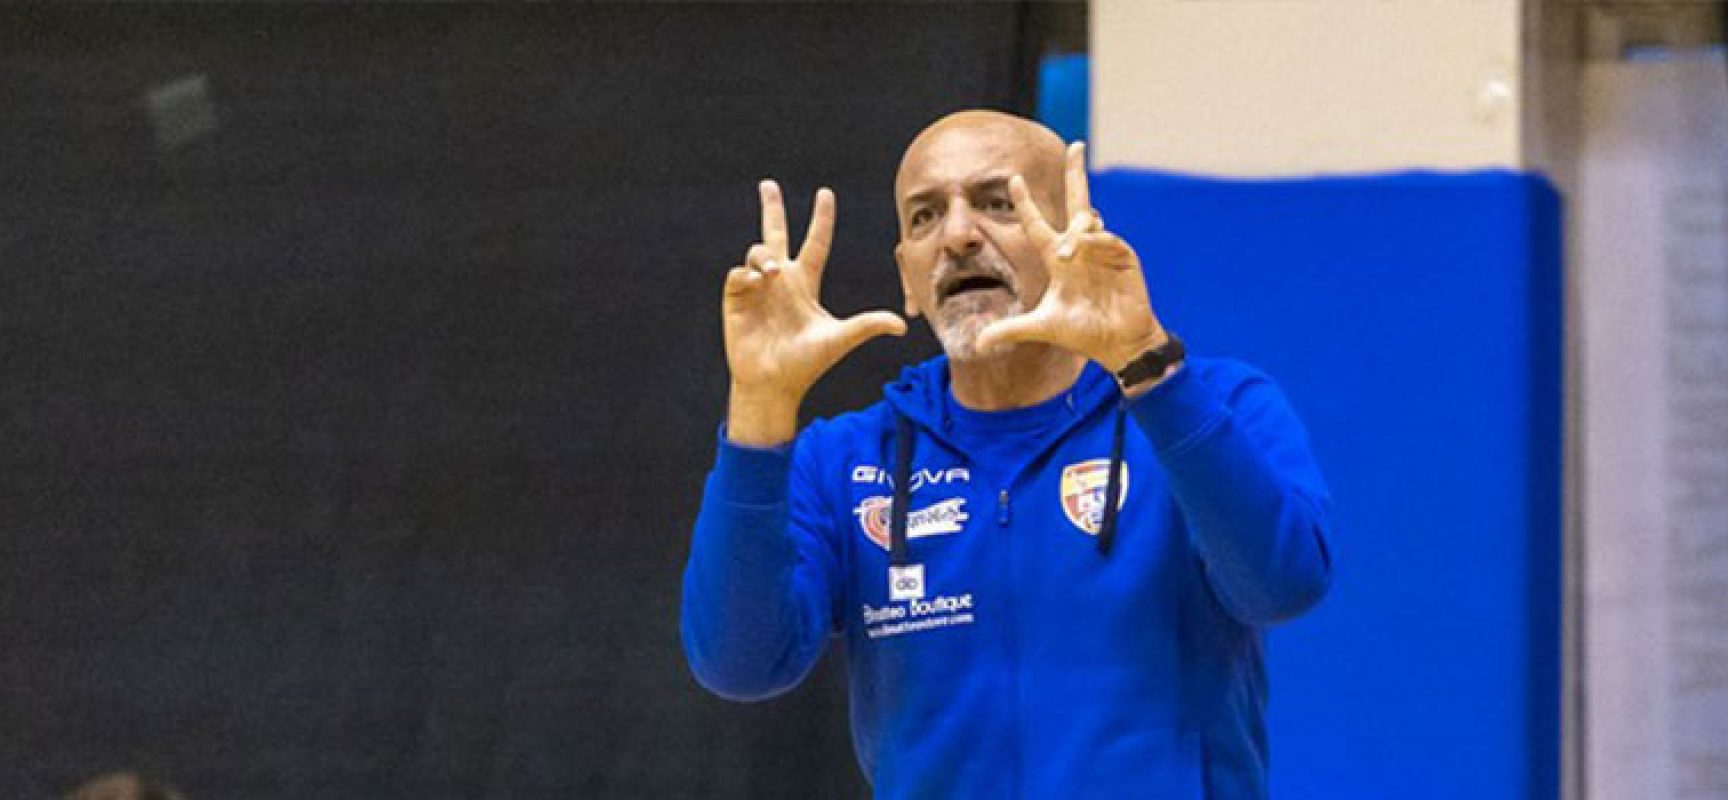 Marcello Sarcinella nuovo coach della Star Volley Bisceglie